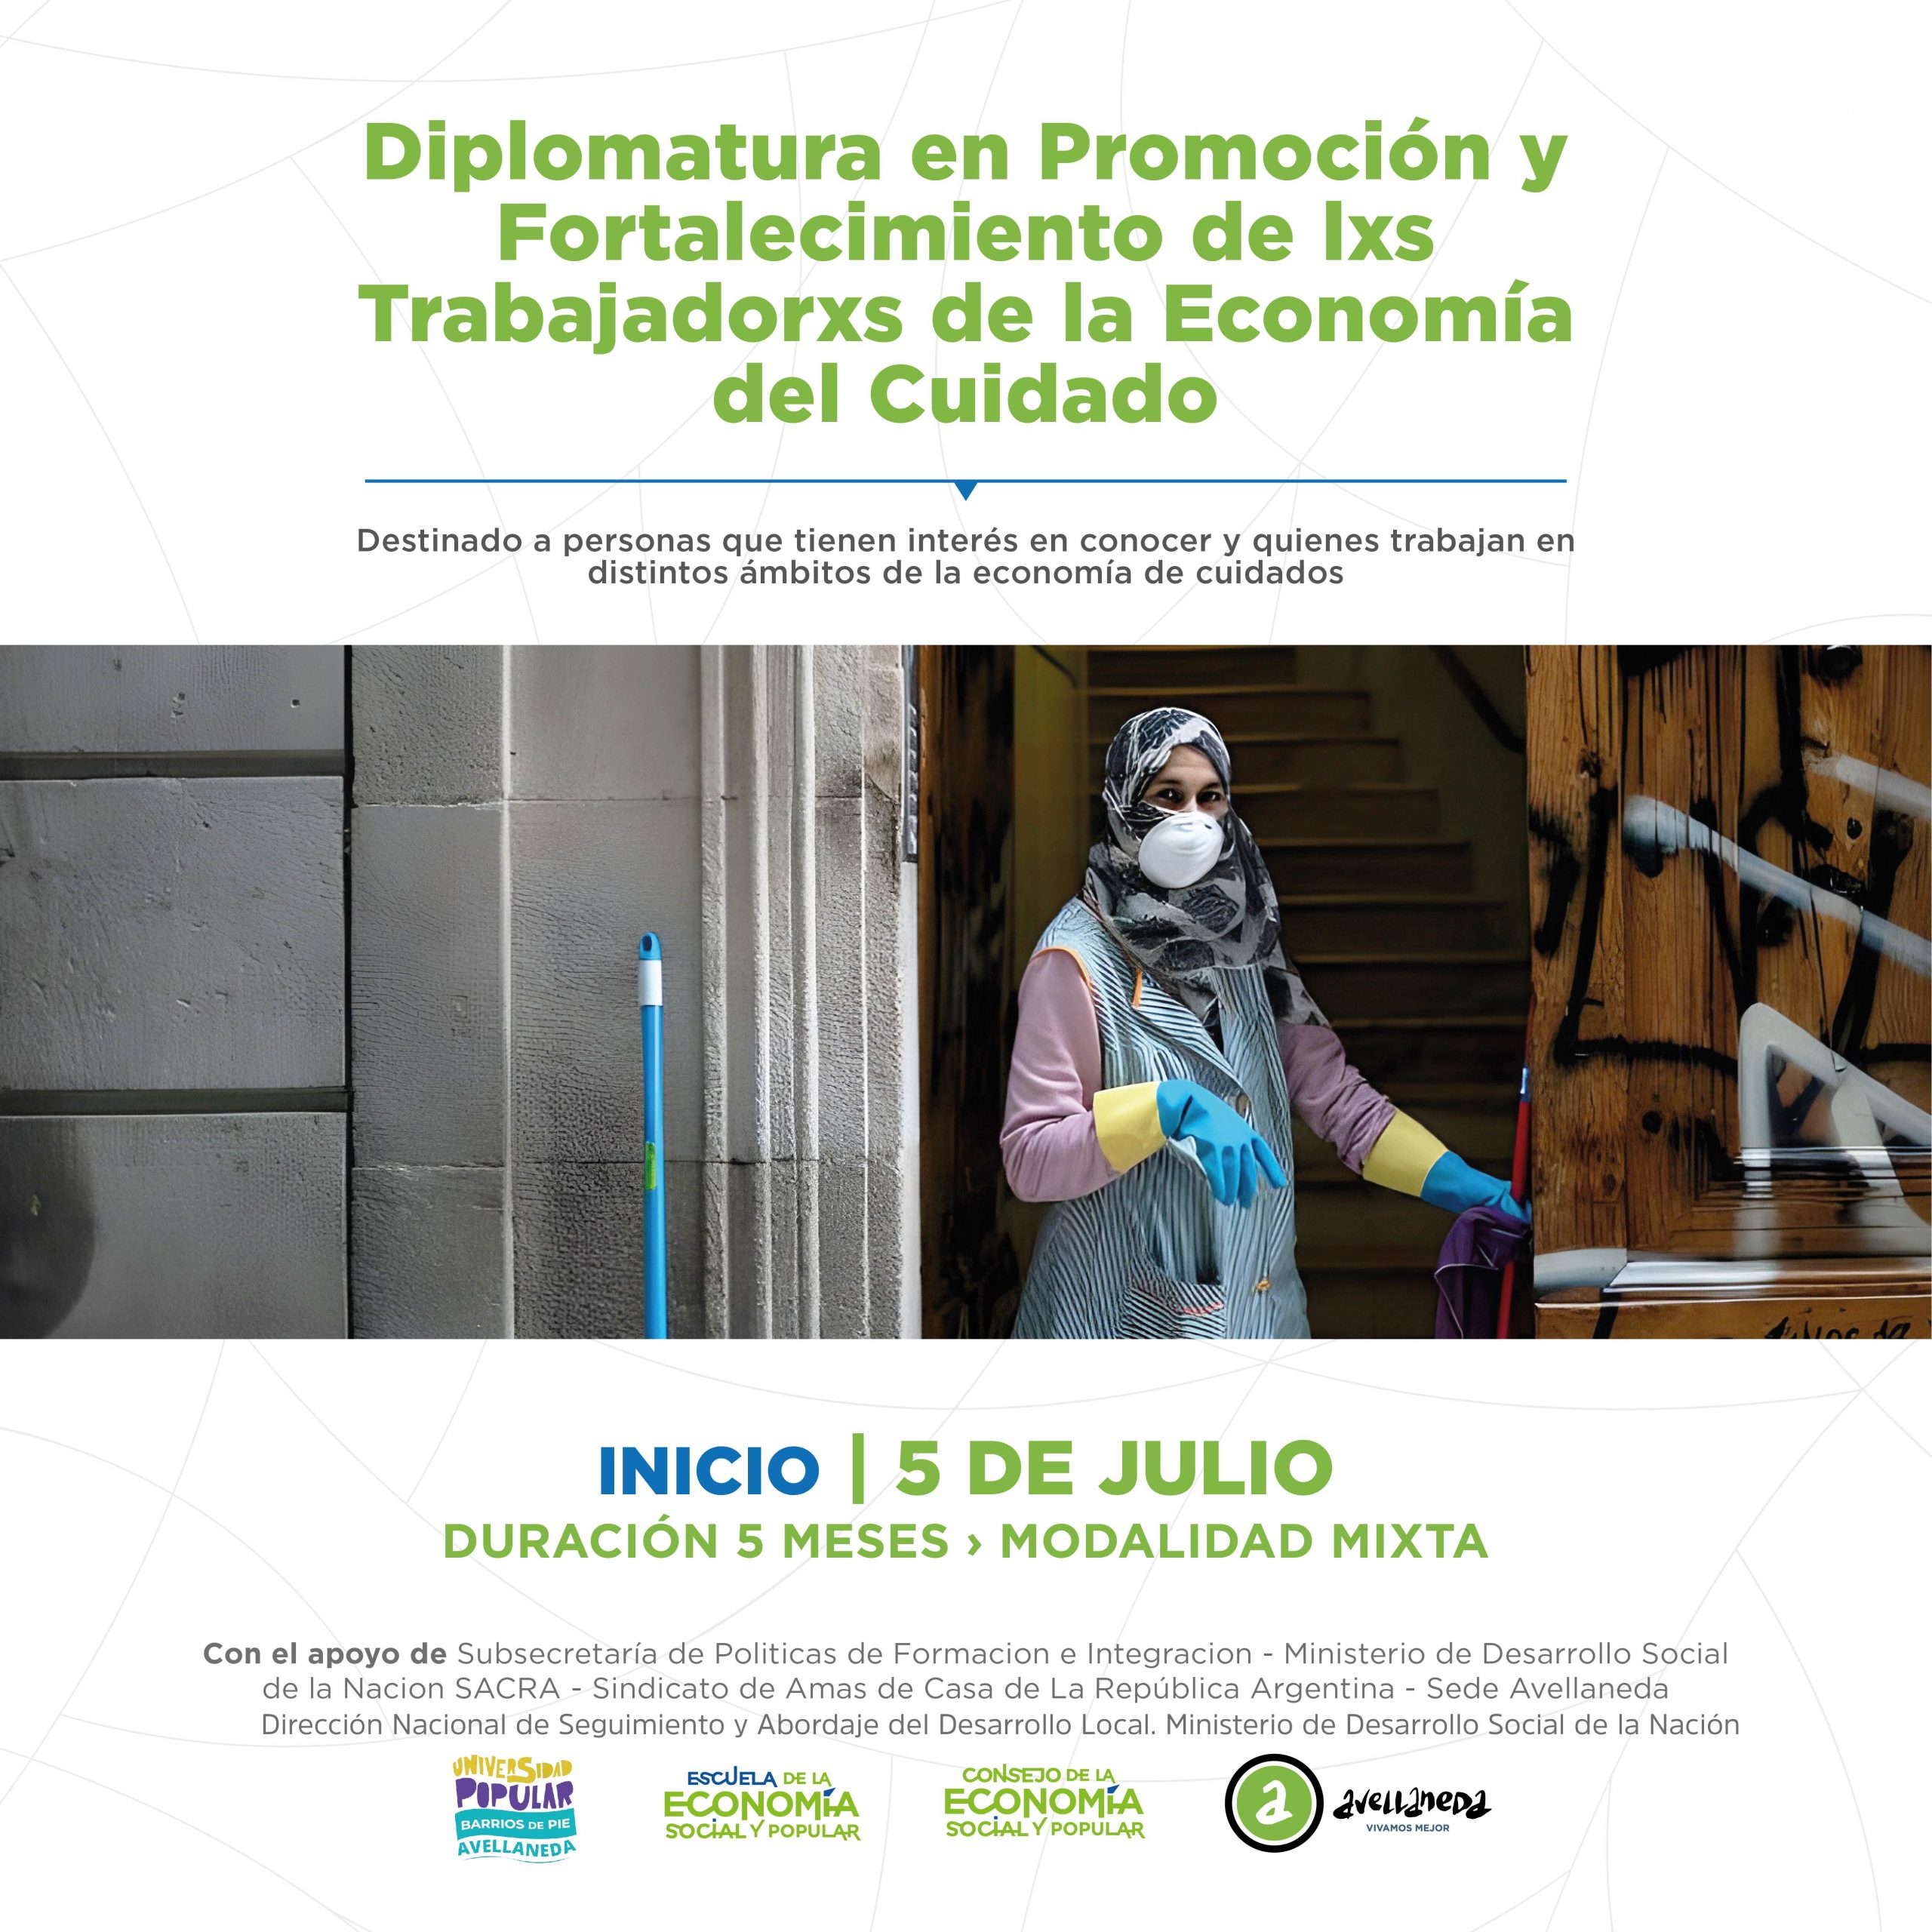 Diplomatura ‘Promoción y Fortalecimiento de lxs trabajadorxs de la Economía del Cuidado’